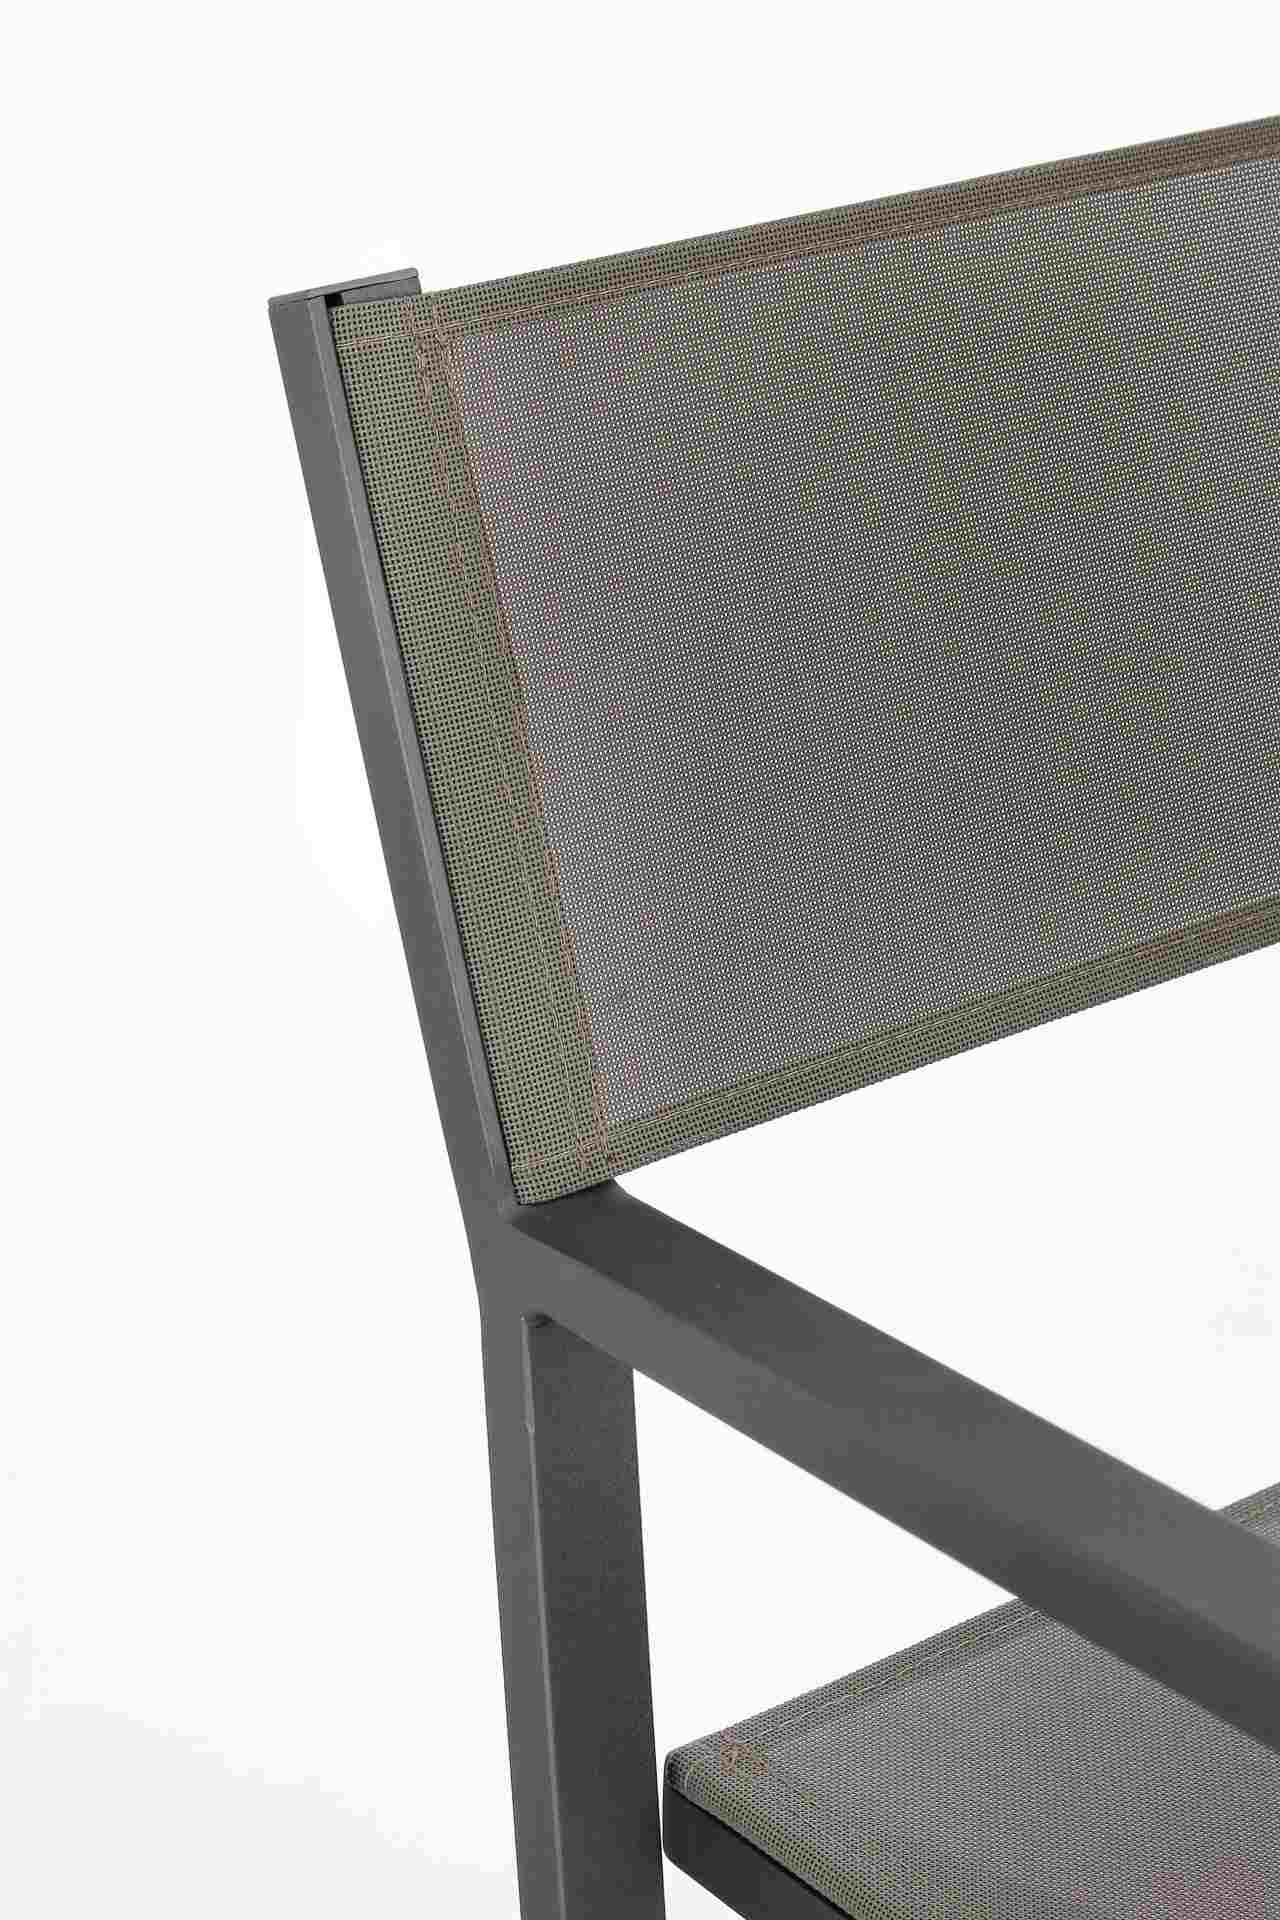 Der Gartenstuhl Konnor überzeugt mit seinem modernen Design. Gefertigt wurde er aus Textilene, welche einen Anthrazit Farbton besitzt. Das Gestell ist aus Aluminium und hat auch eine Anthrazit Farbe. Der Stuhl verfügt über eine Sitzhöhe von 46 cm und ist 